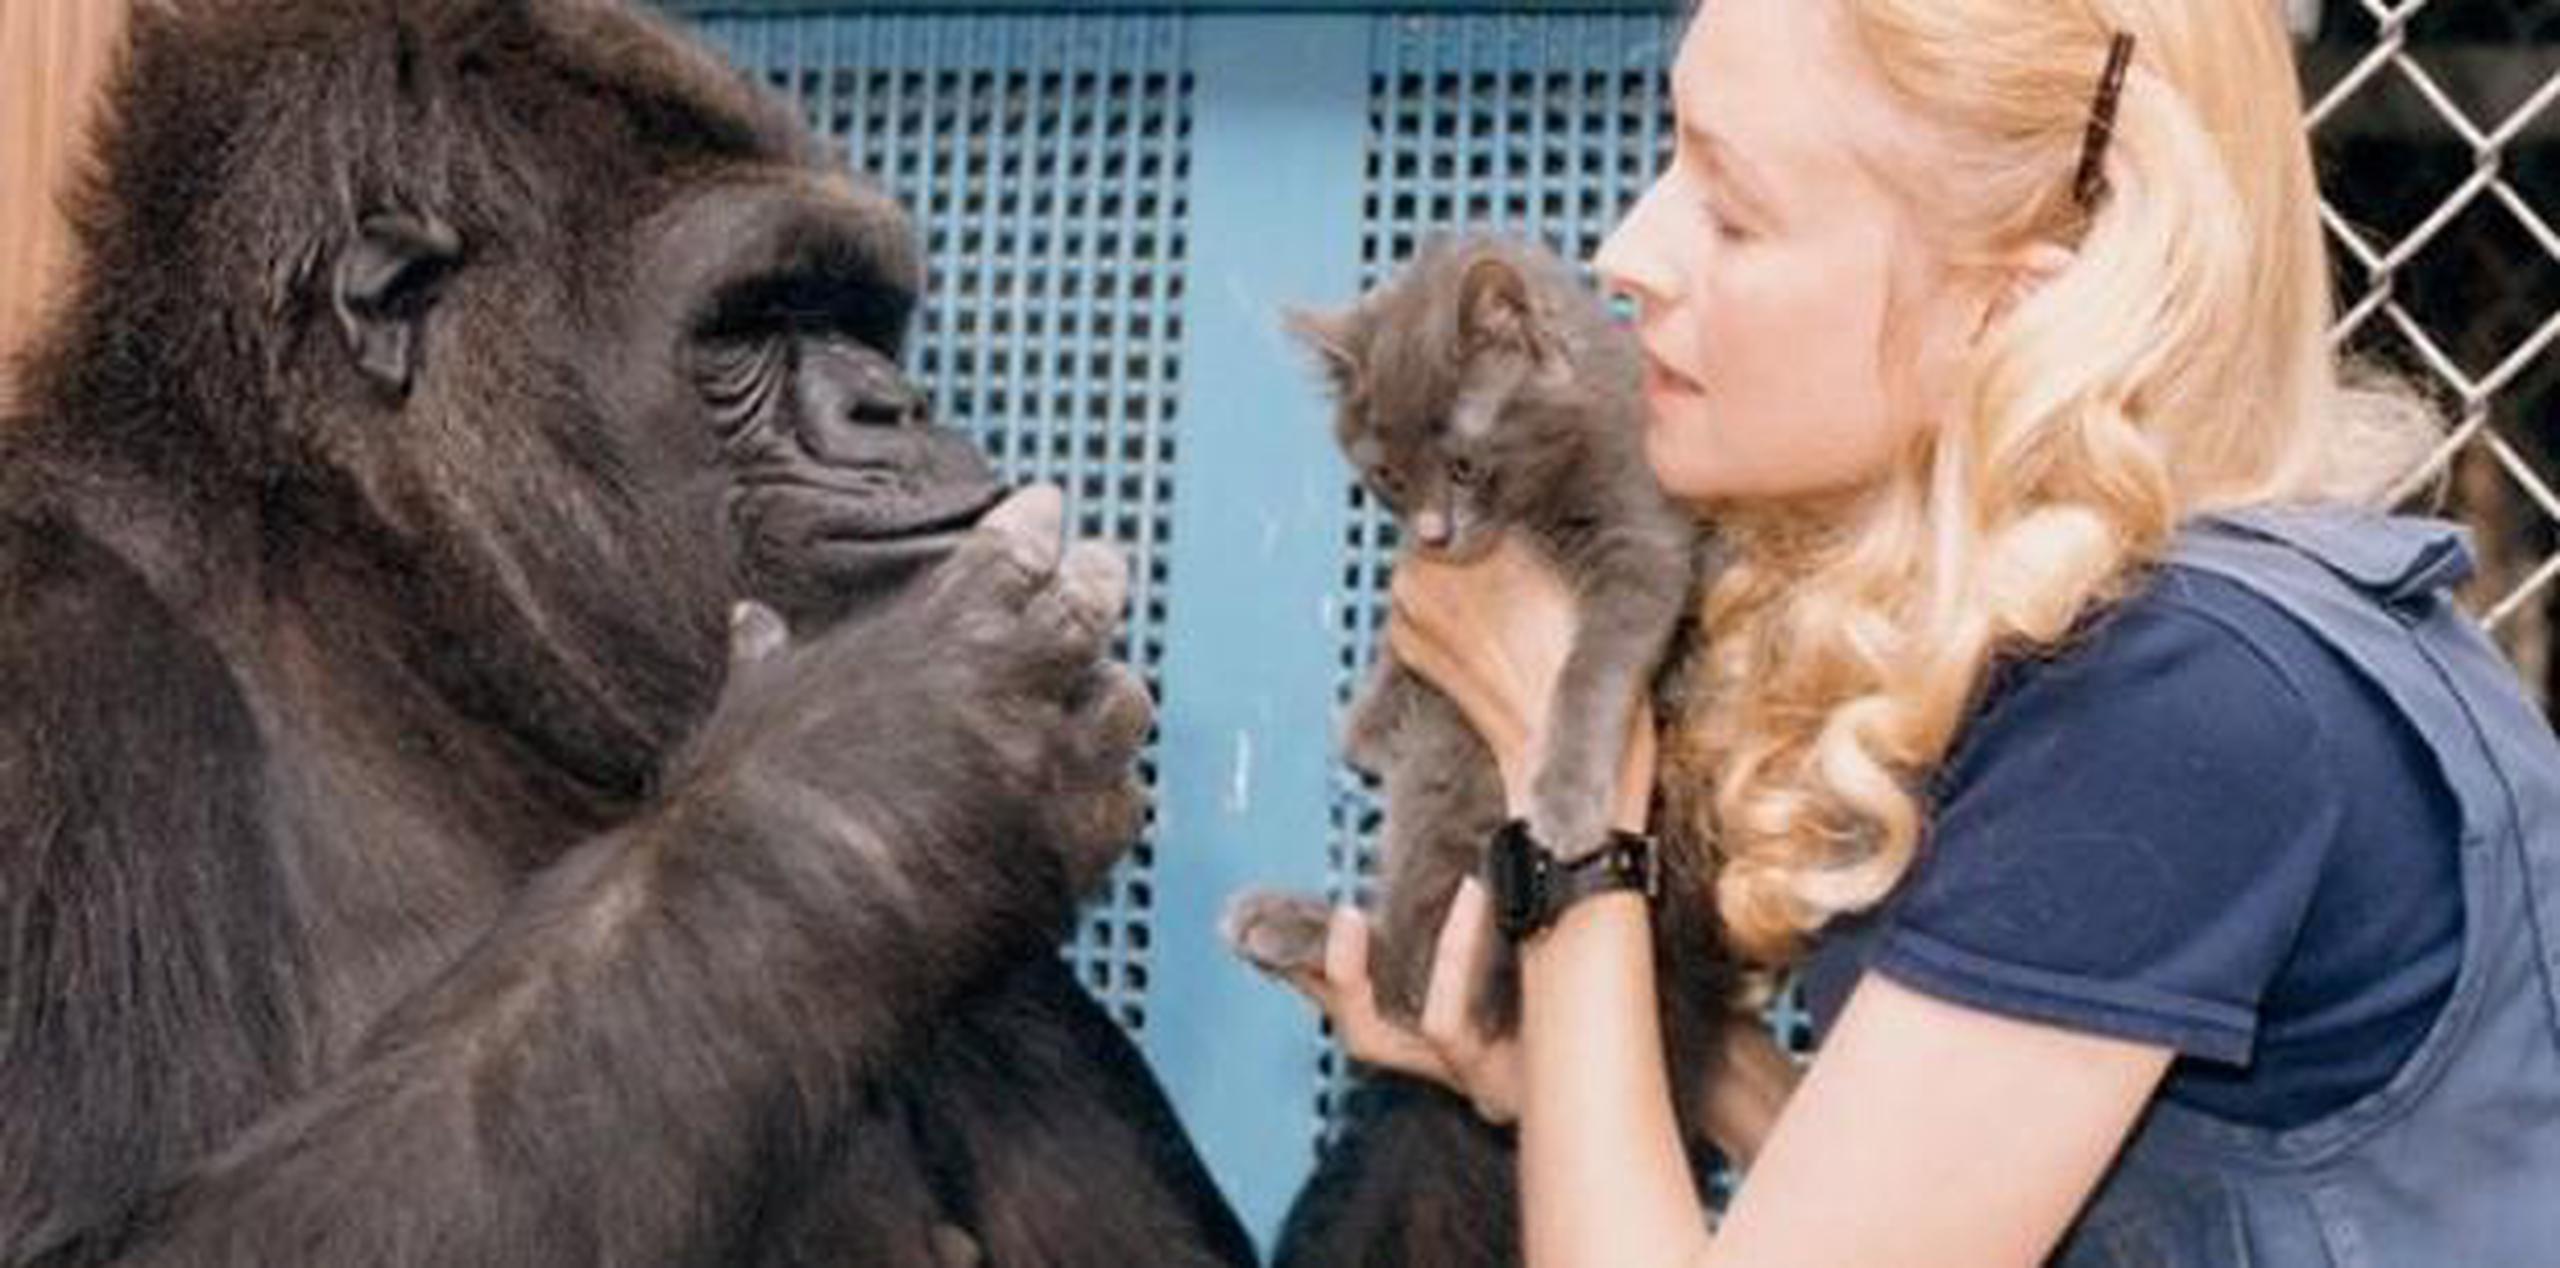 Koko nació en el Zoológico de San Francisco, y la doctora Francine Patterson comenzó a enseñarle el lenguaje de señas, convirtiéndose en parte de un proyecto de la Universidad de Stanford en 1974. (Archivo)